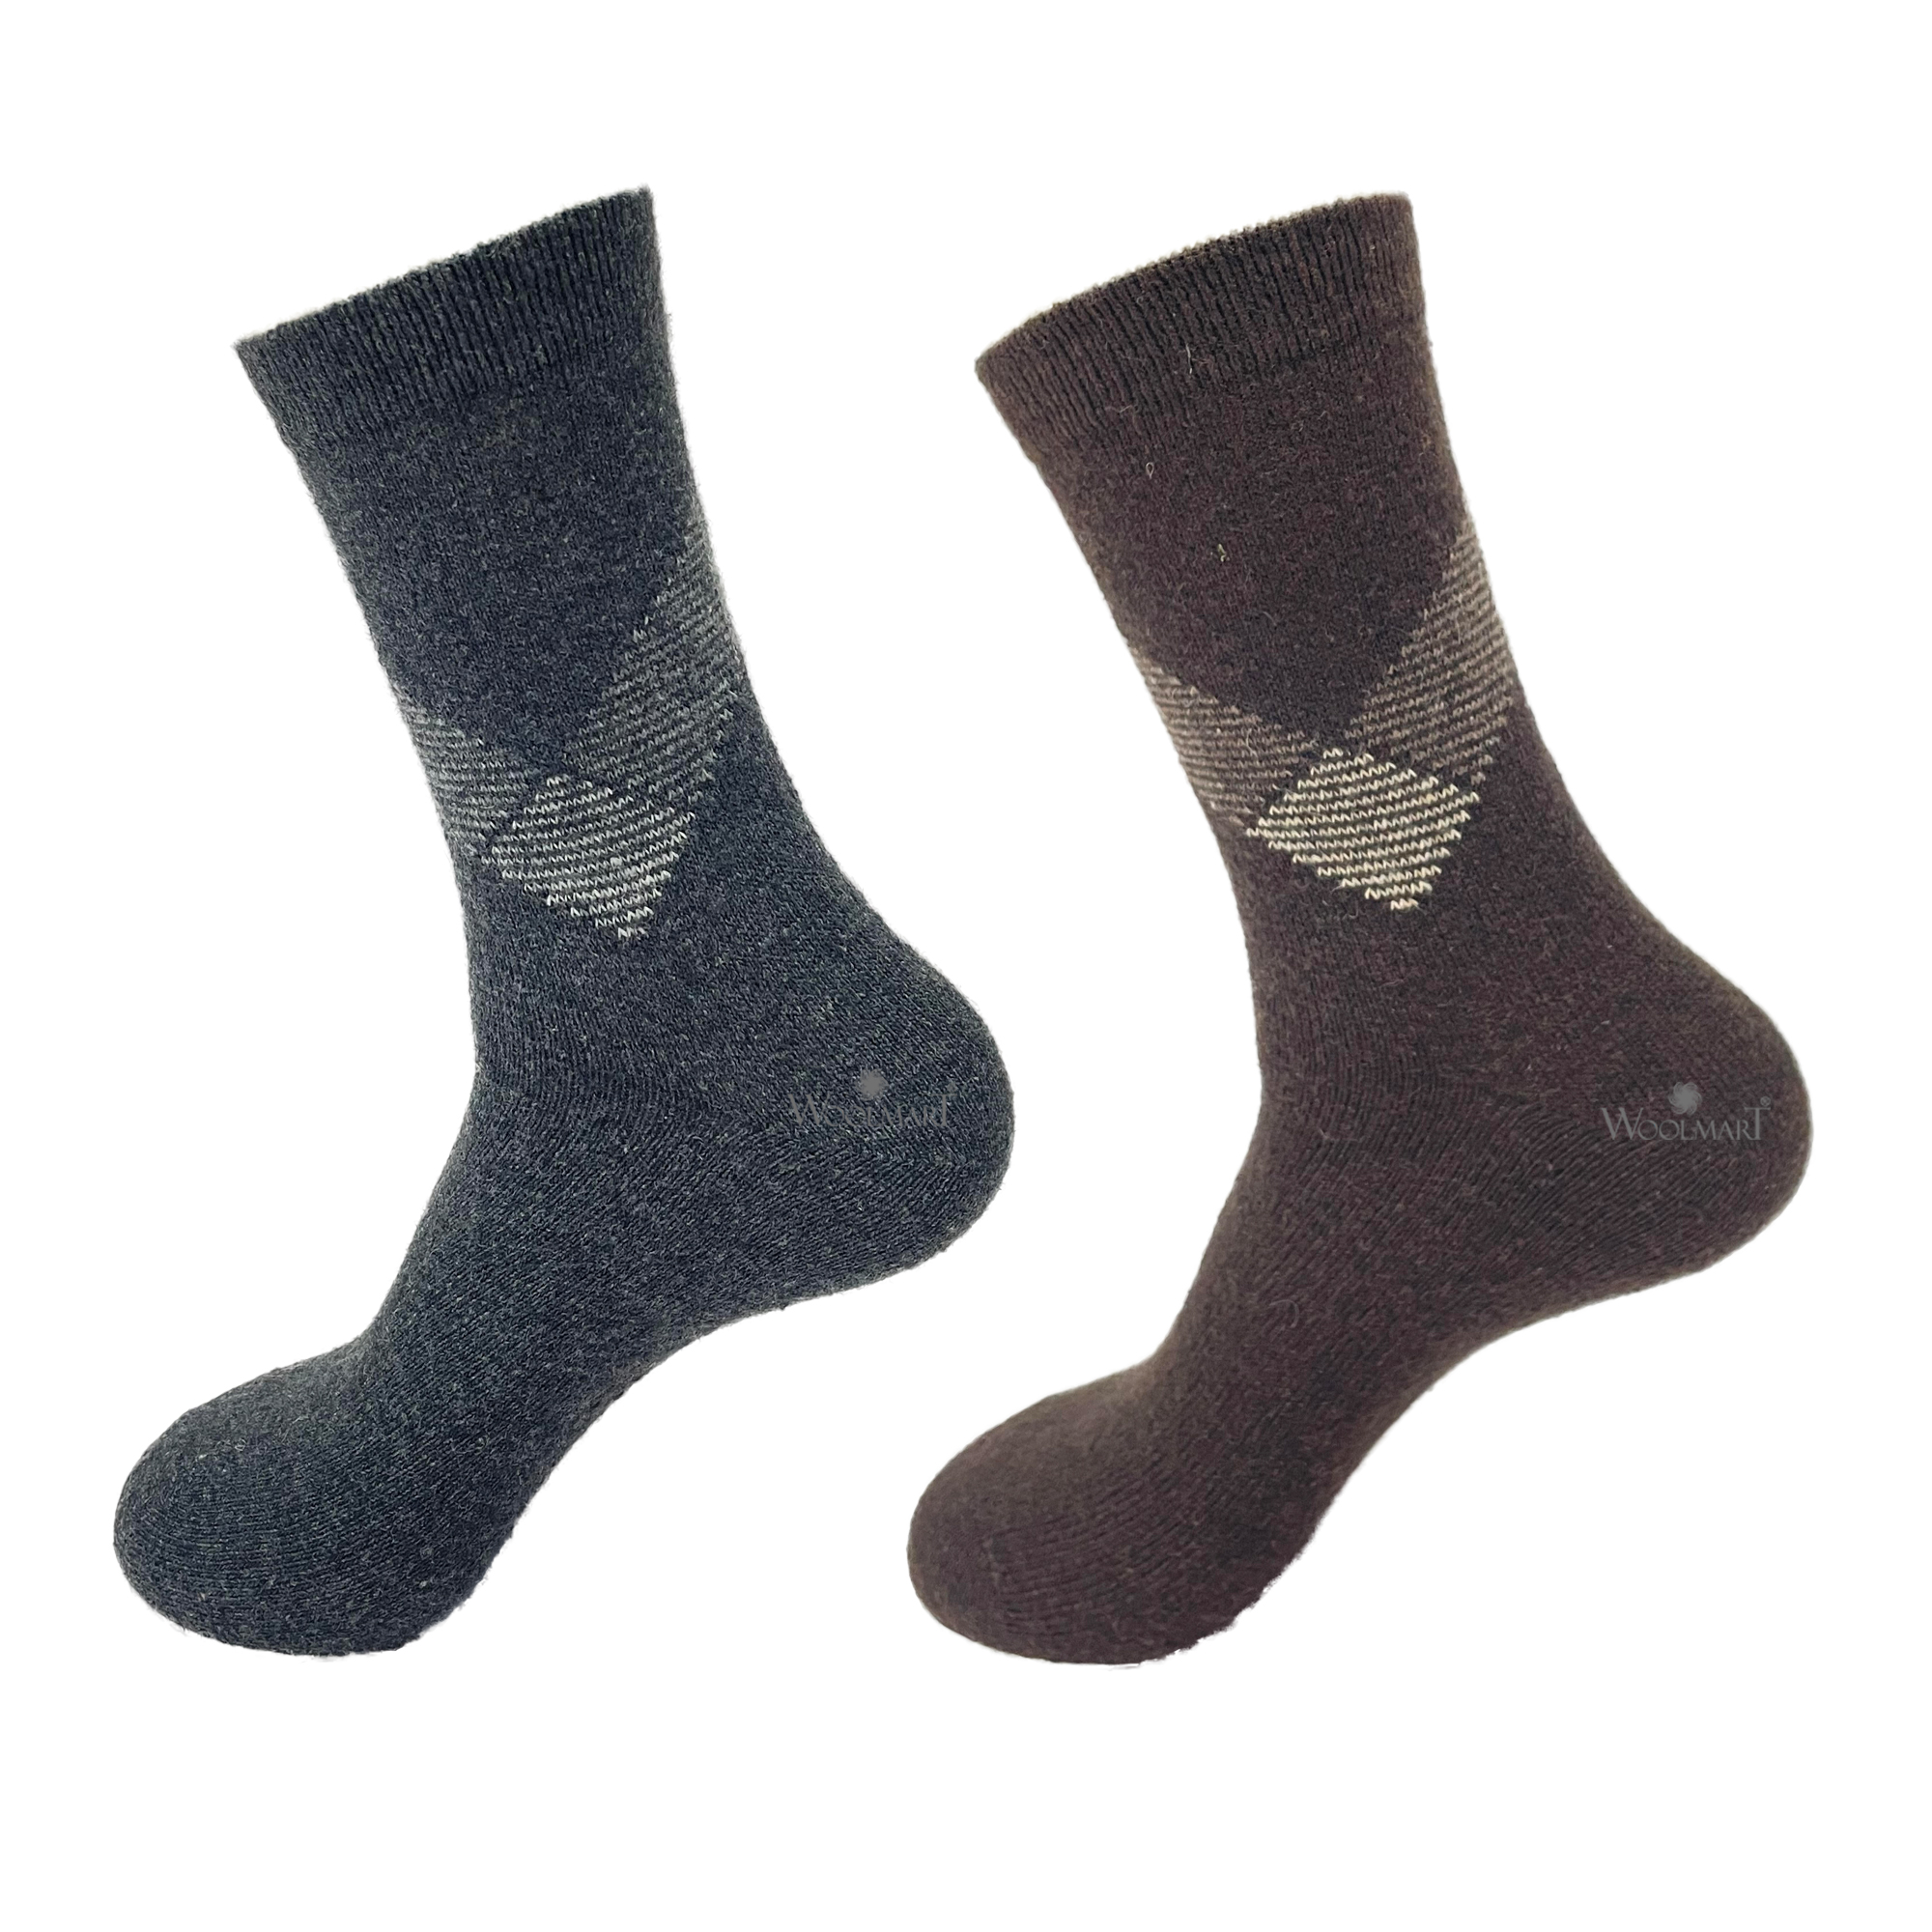 Warm Socks (Pack of 2) Grey & Brown